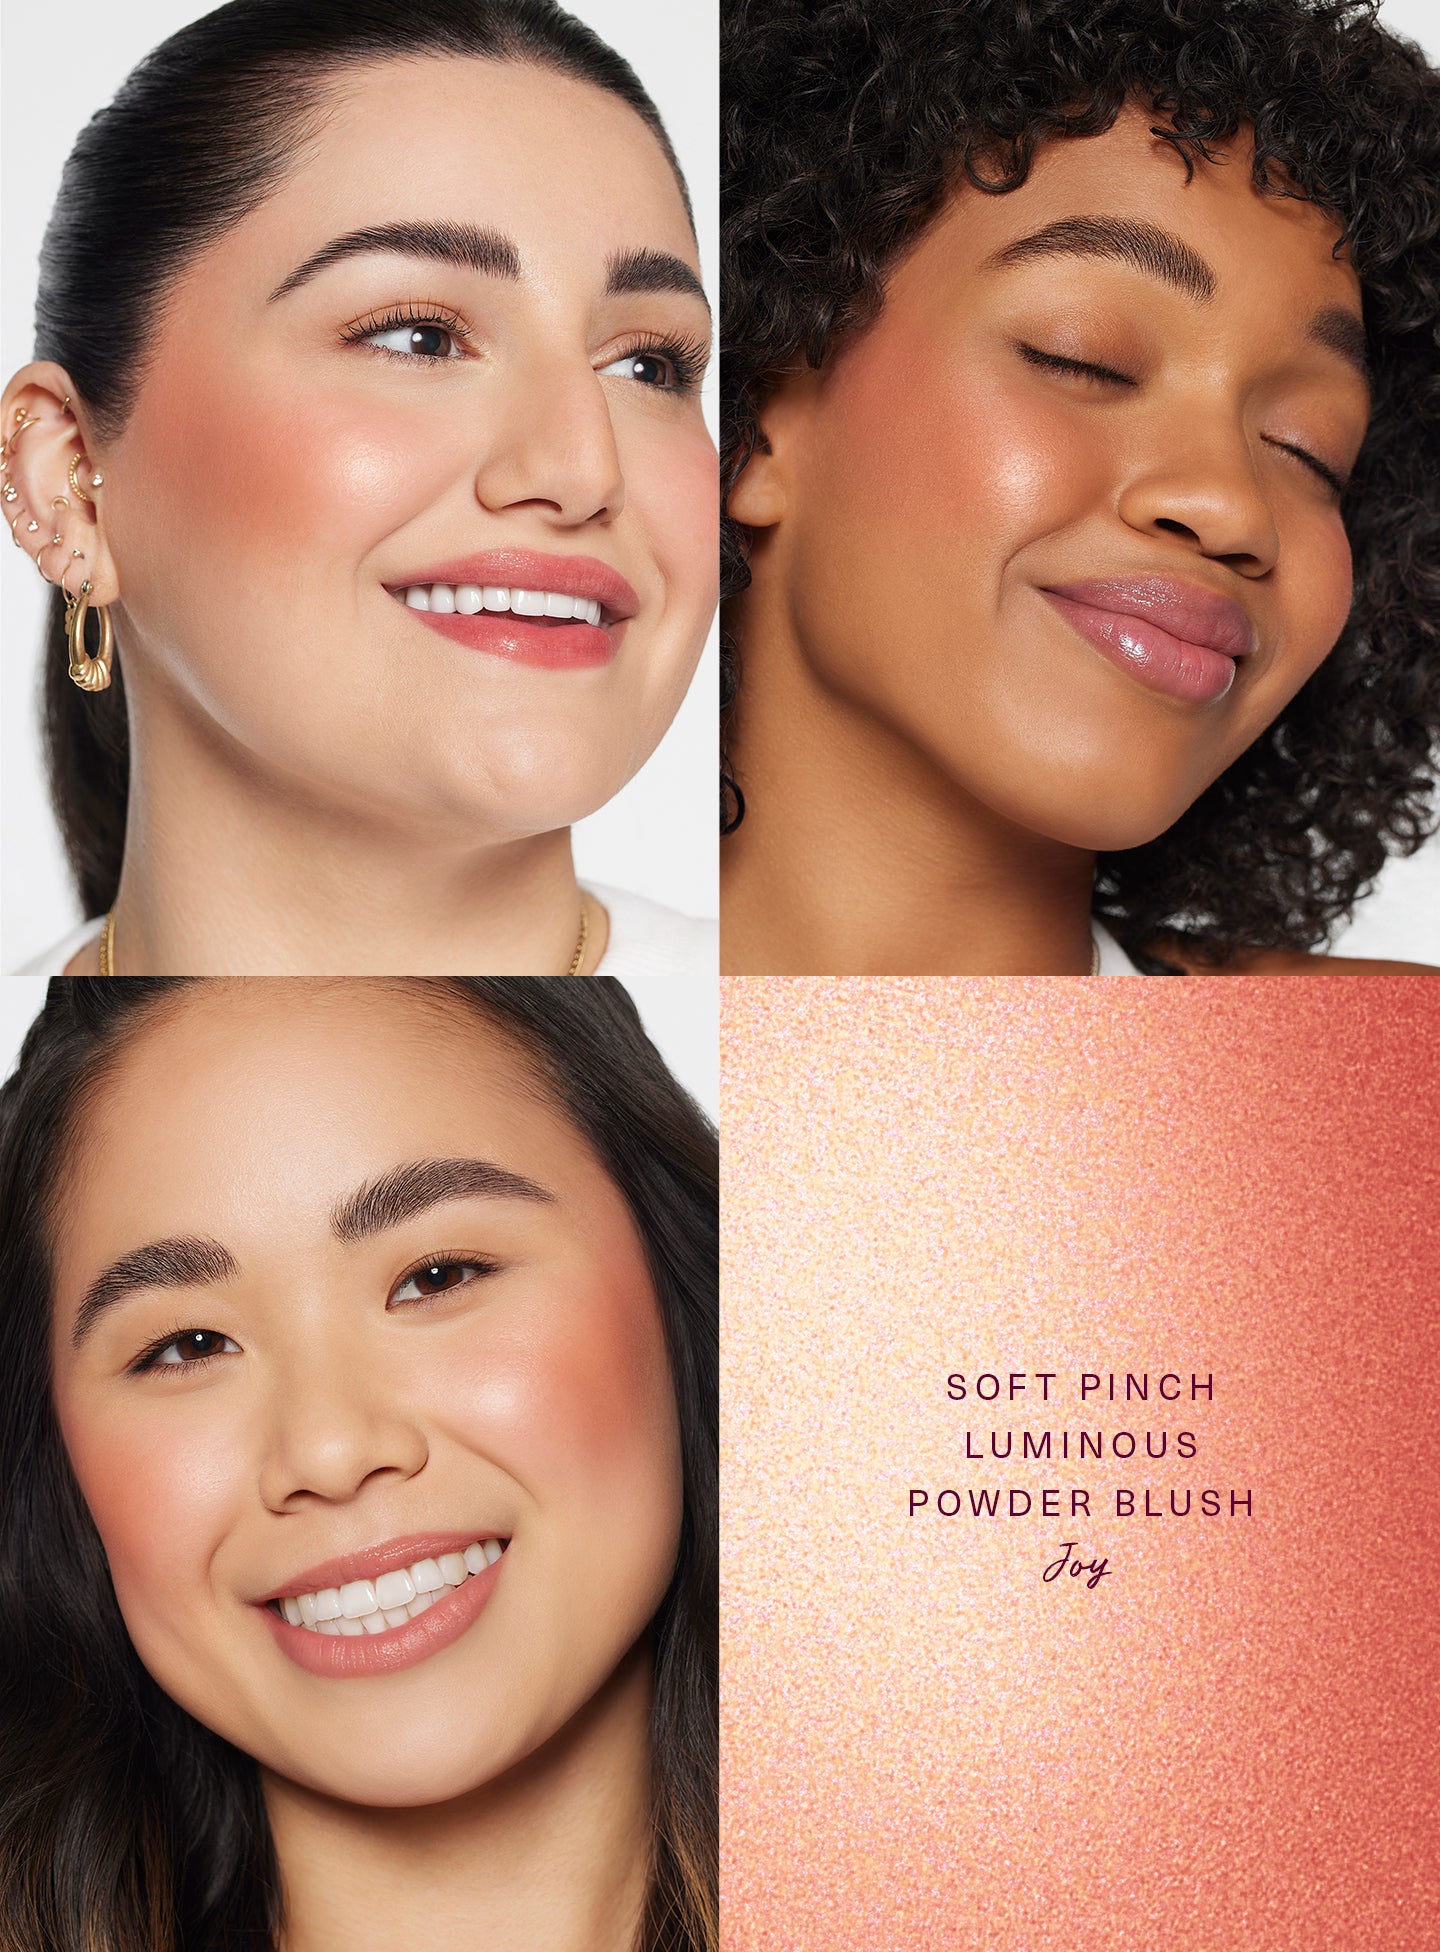 Soft Pinch Luminous Powder Blush